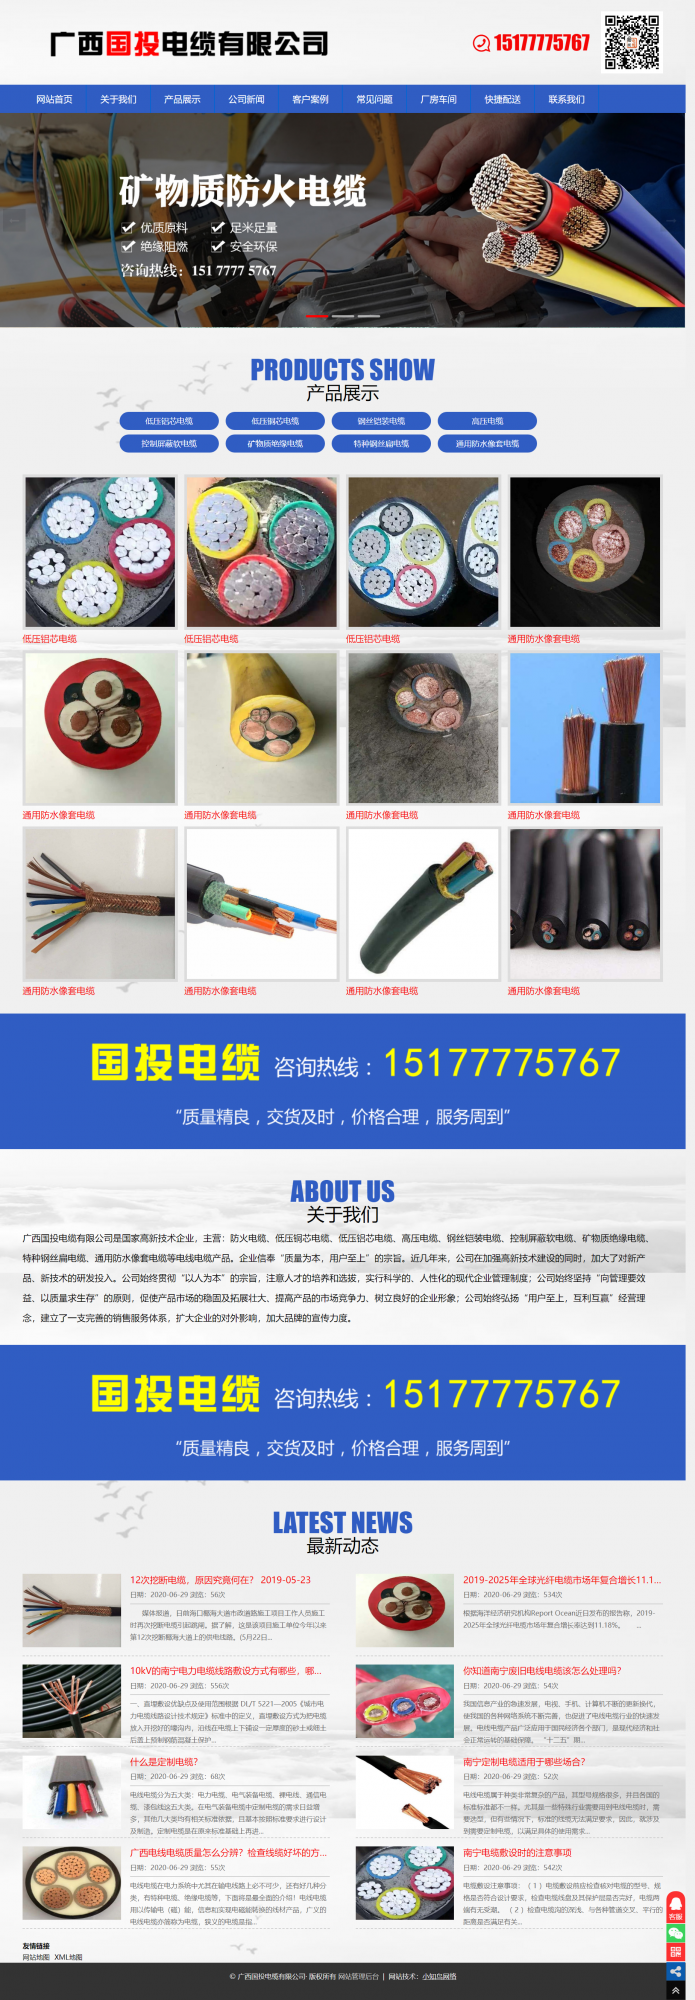 广西国投电缆有限公司.png